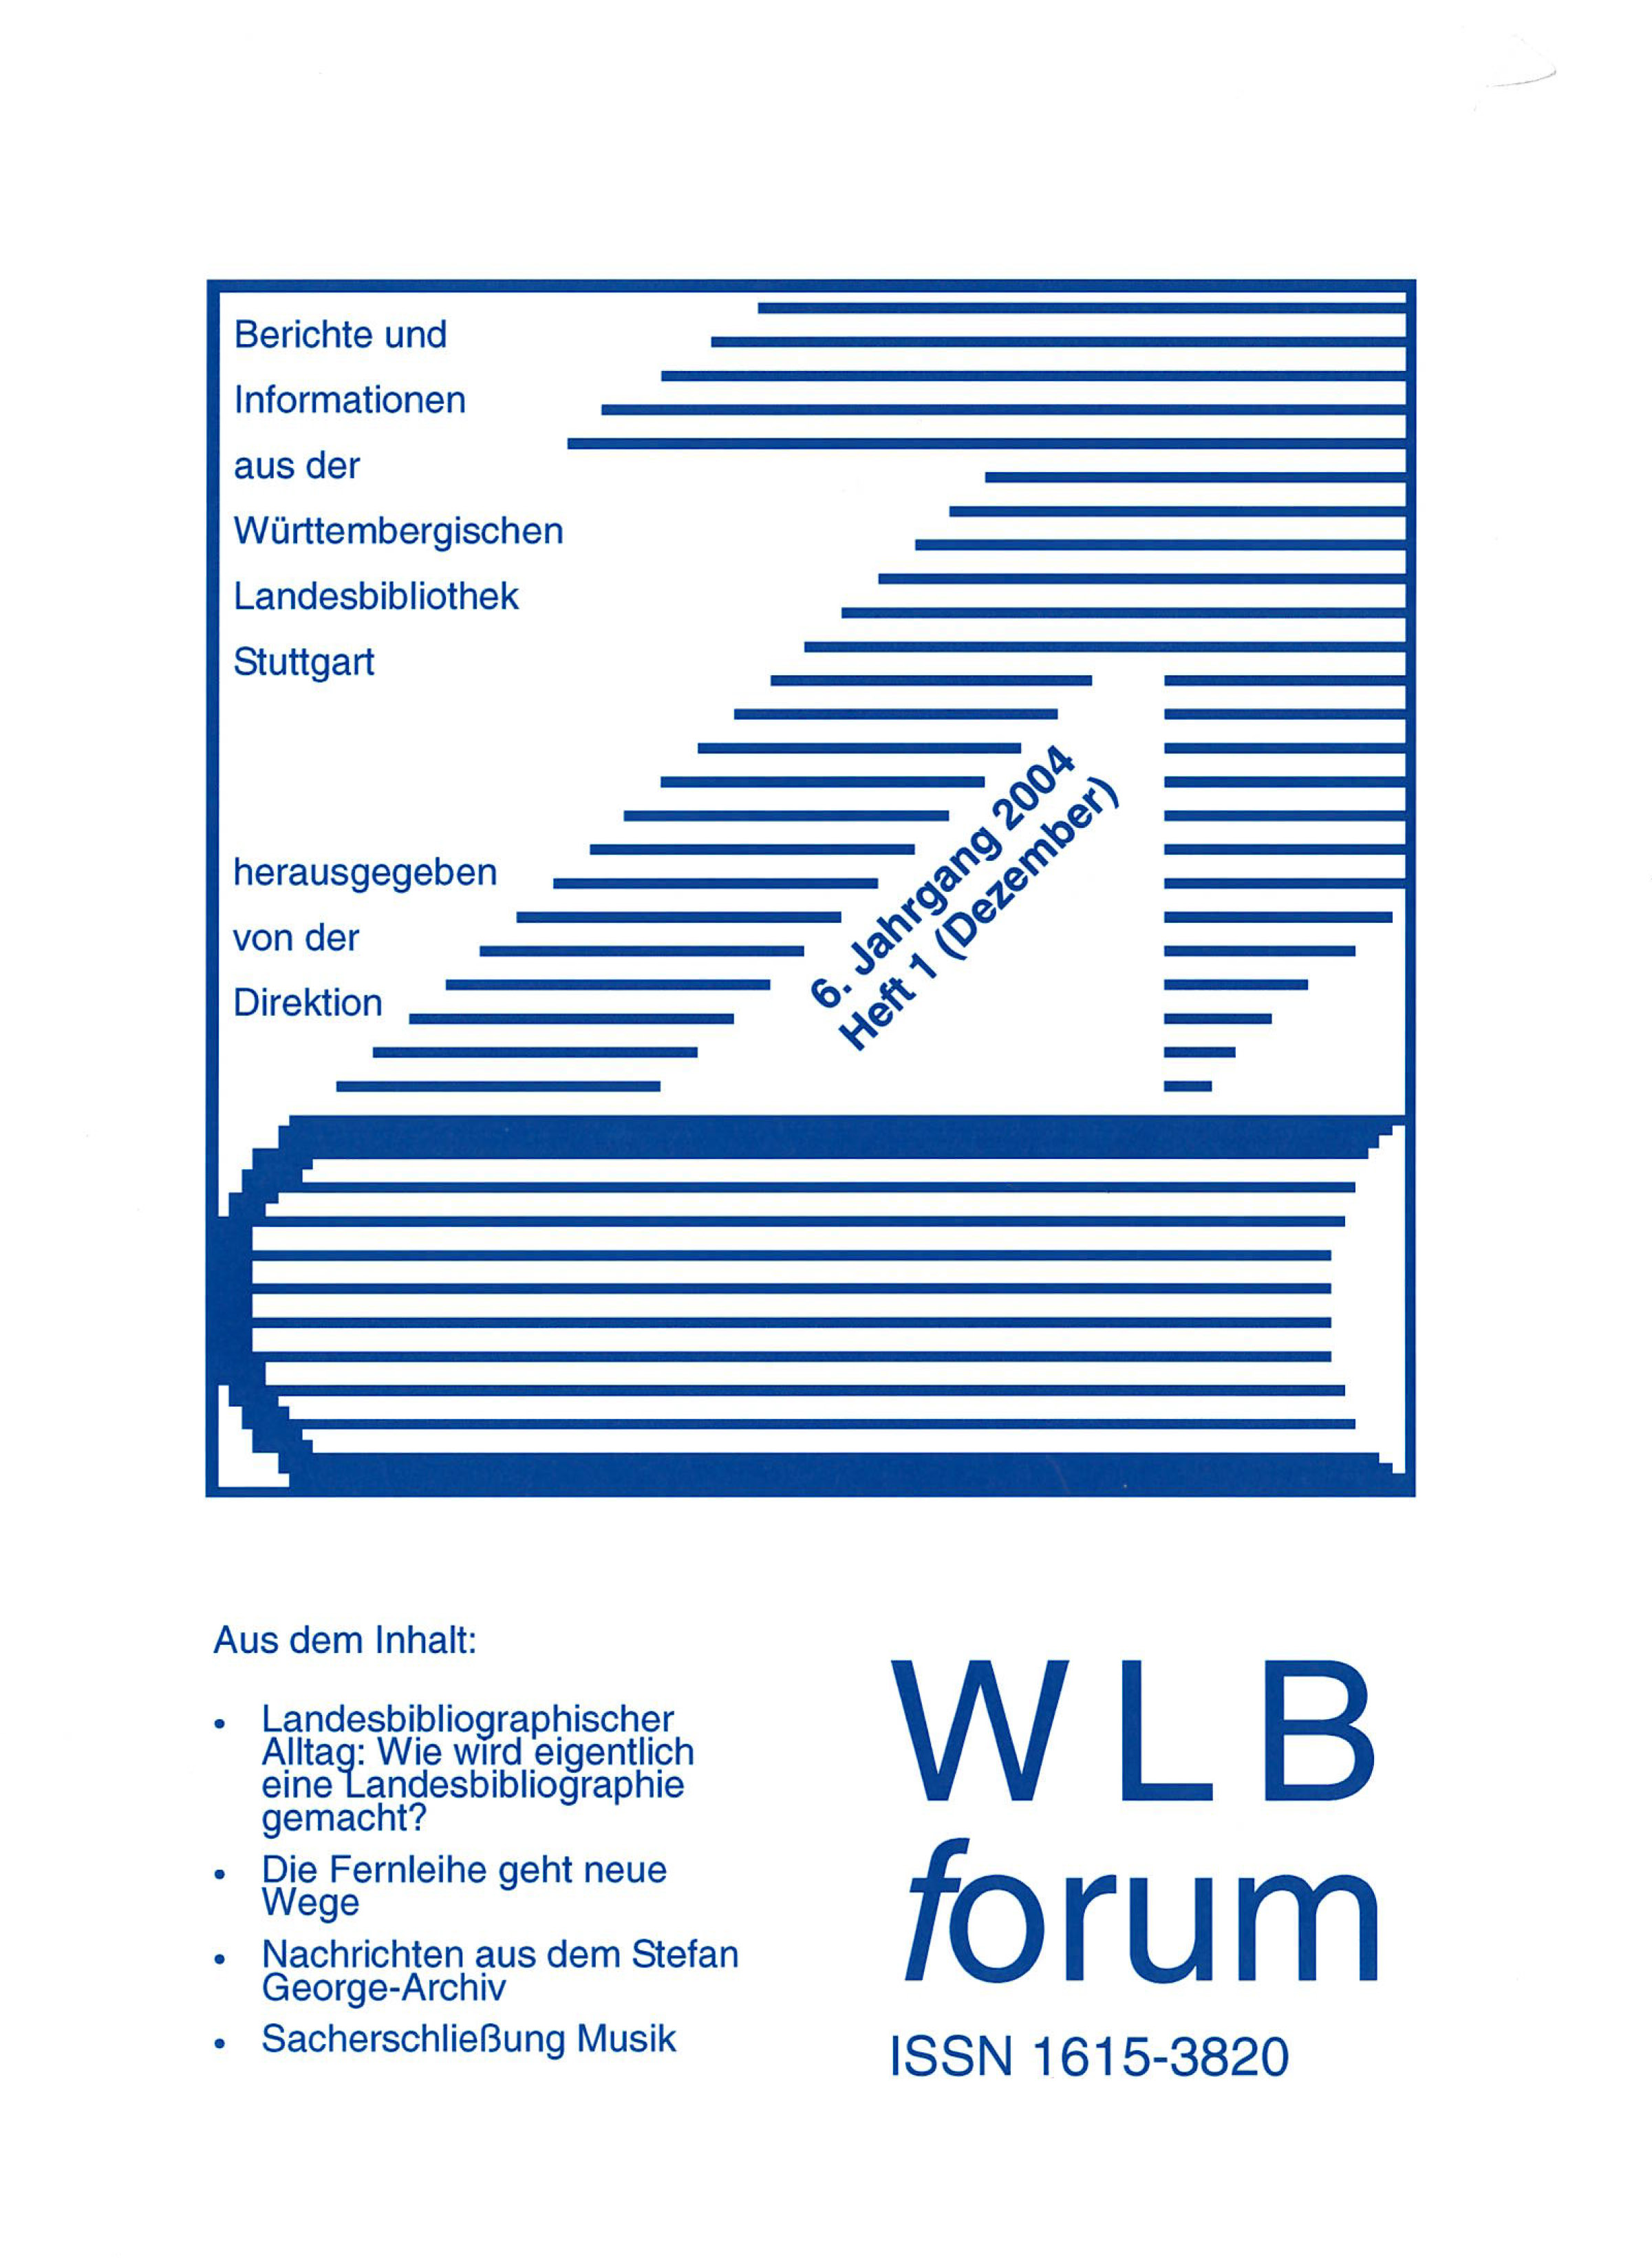                     Ansehen Bd. 6 Nr. 1 (2004): WLBforum
                